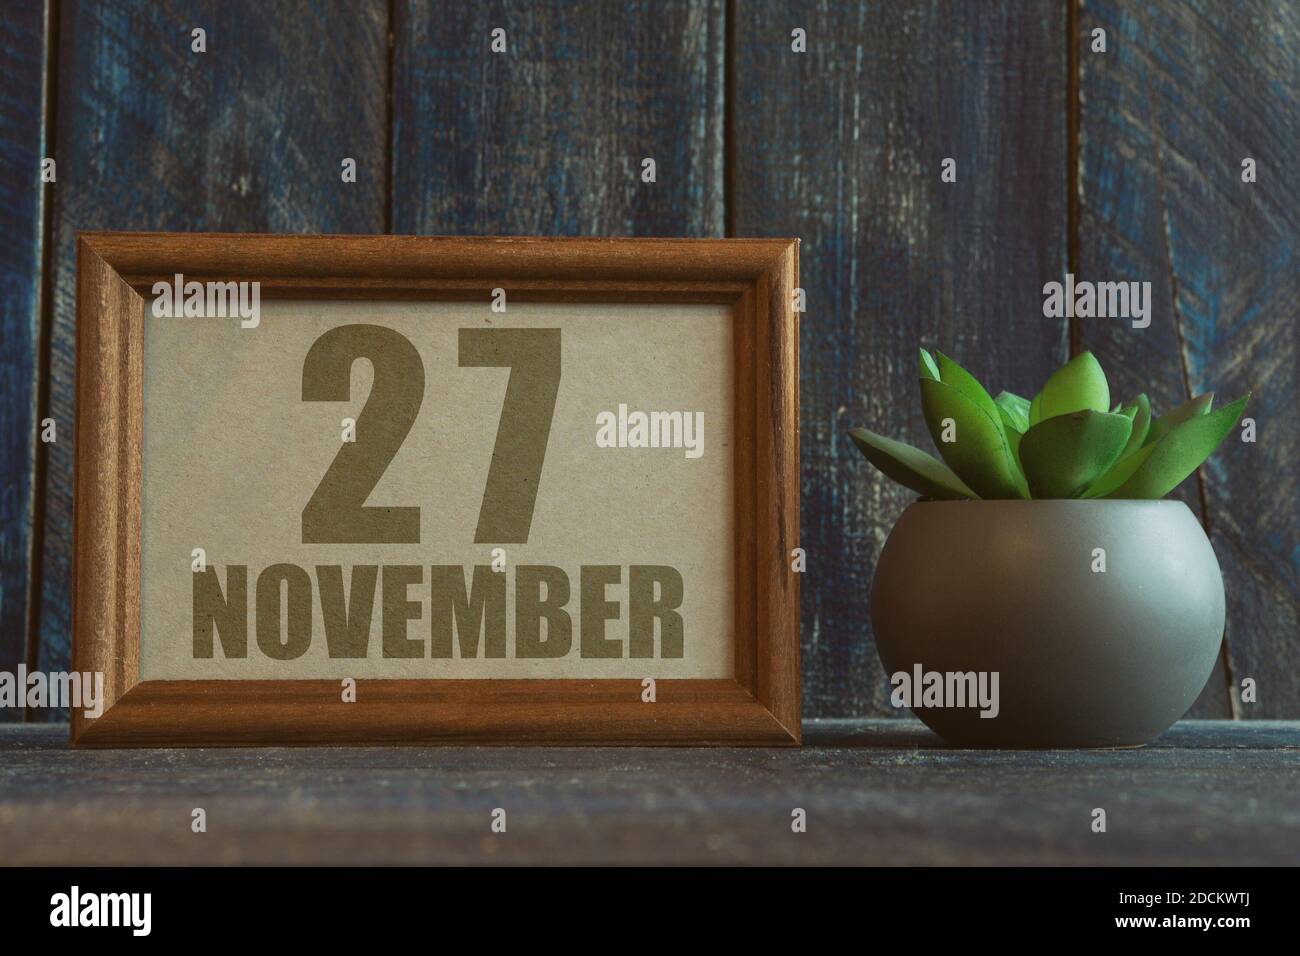 27 novembre. Jour 27 du mois, date dans le cadre à côté de succulent sur fond de bois automne mois, jour de l'année concept Banque D'Images